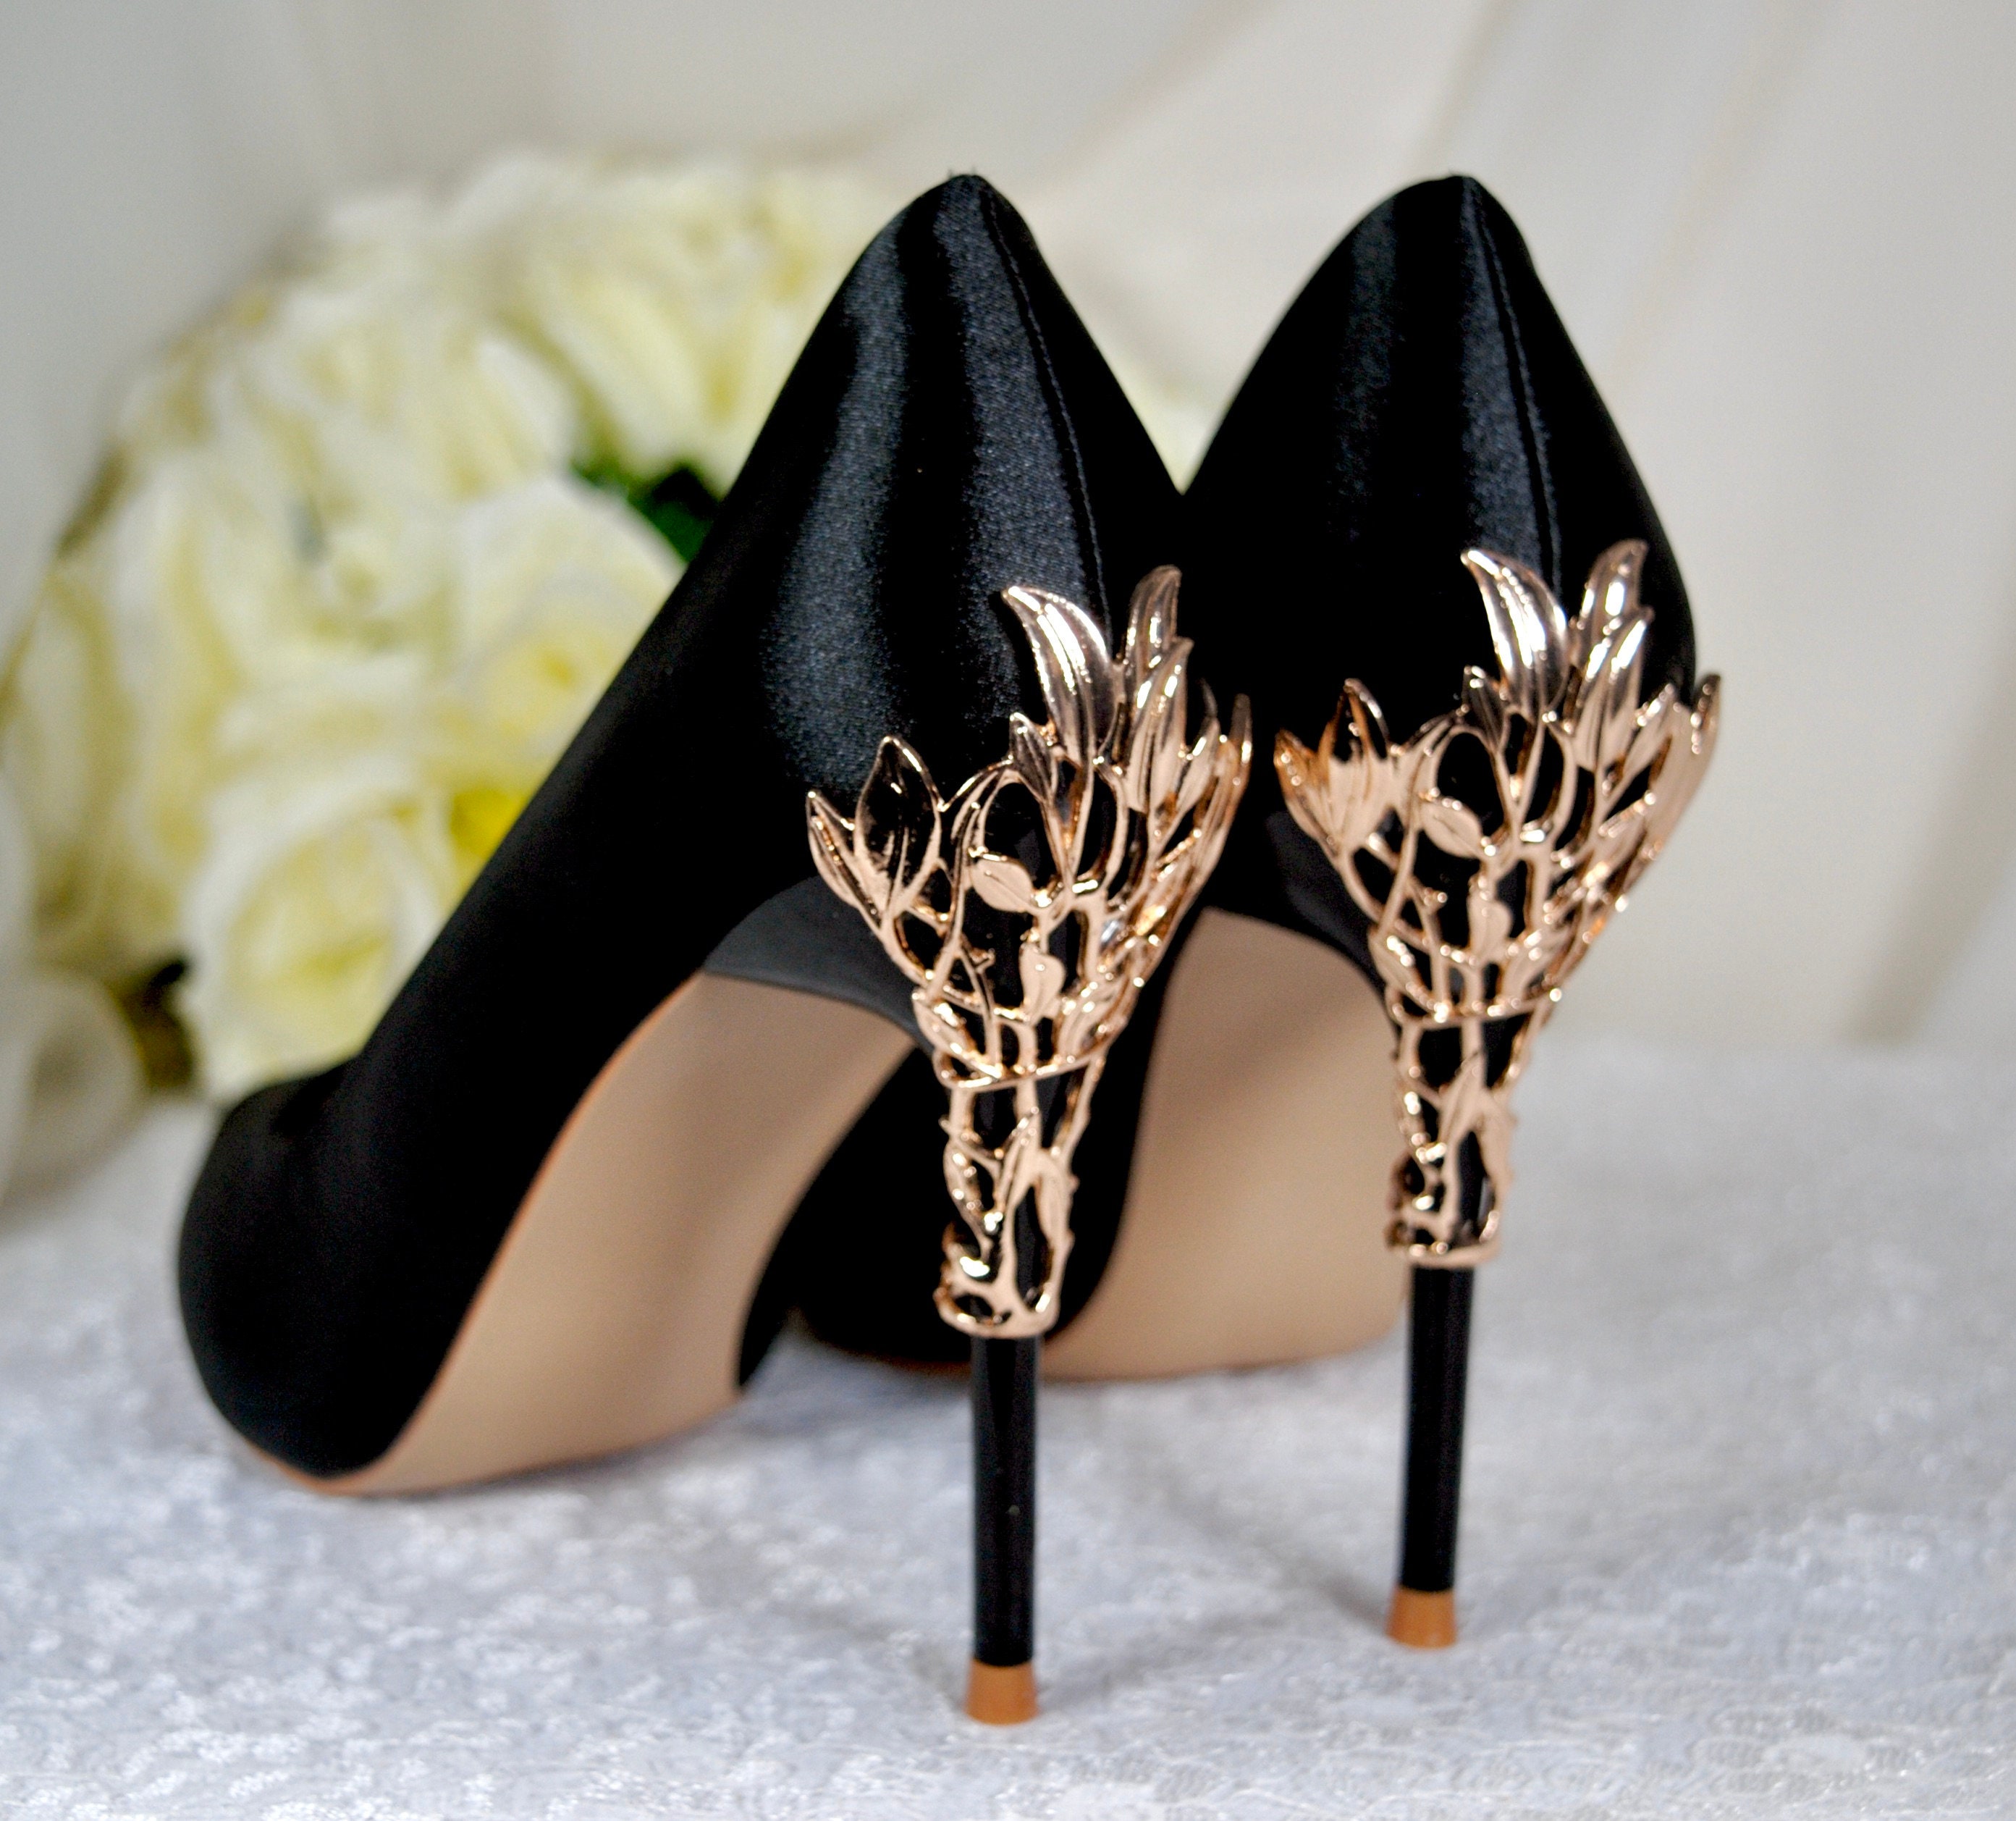 JIMMY CHOO black and gold heels – Loop Generation